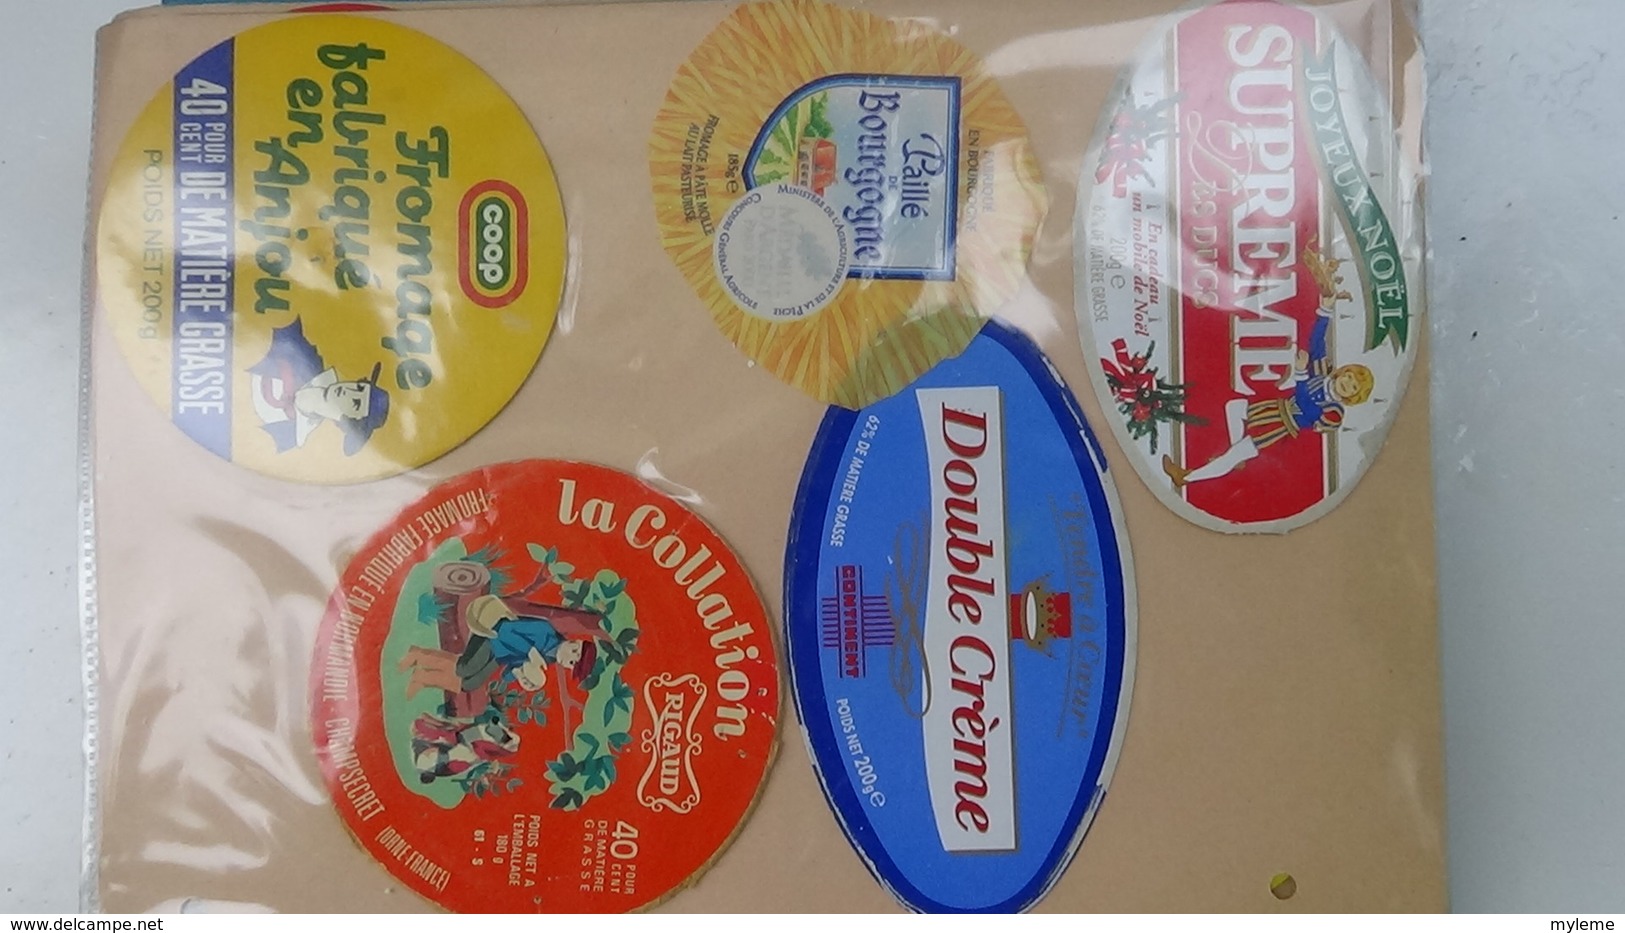 Grosse collection de couvercles et étiquettes (229 dans ce classeur) de fromages Français.7/10 Voir commentaires !!!